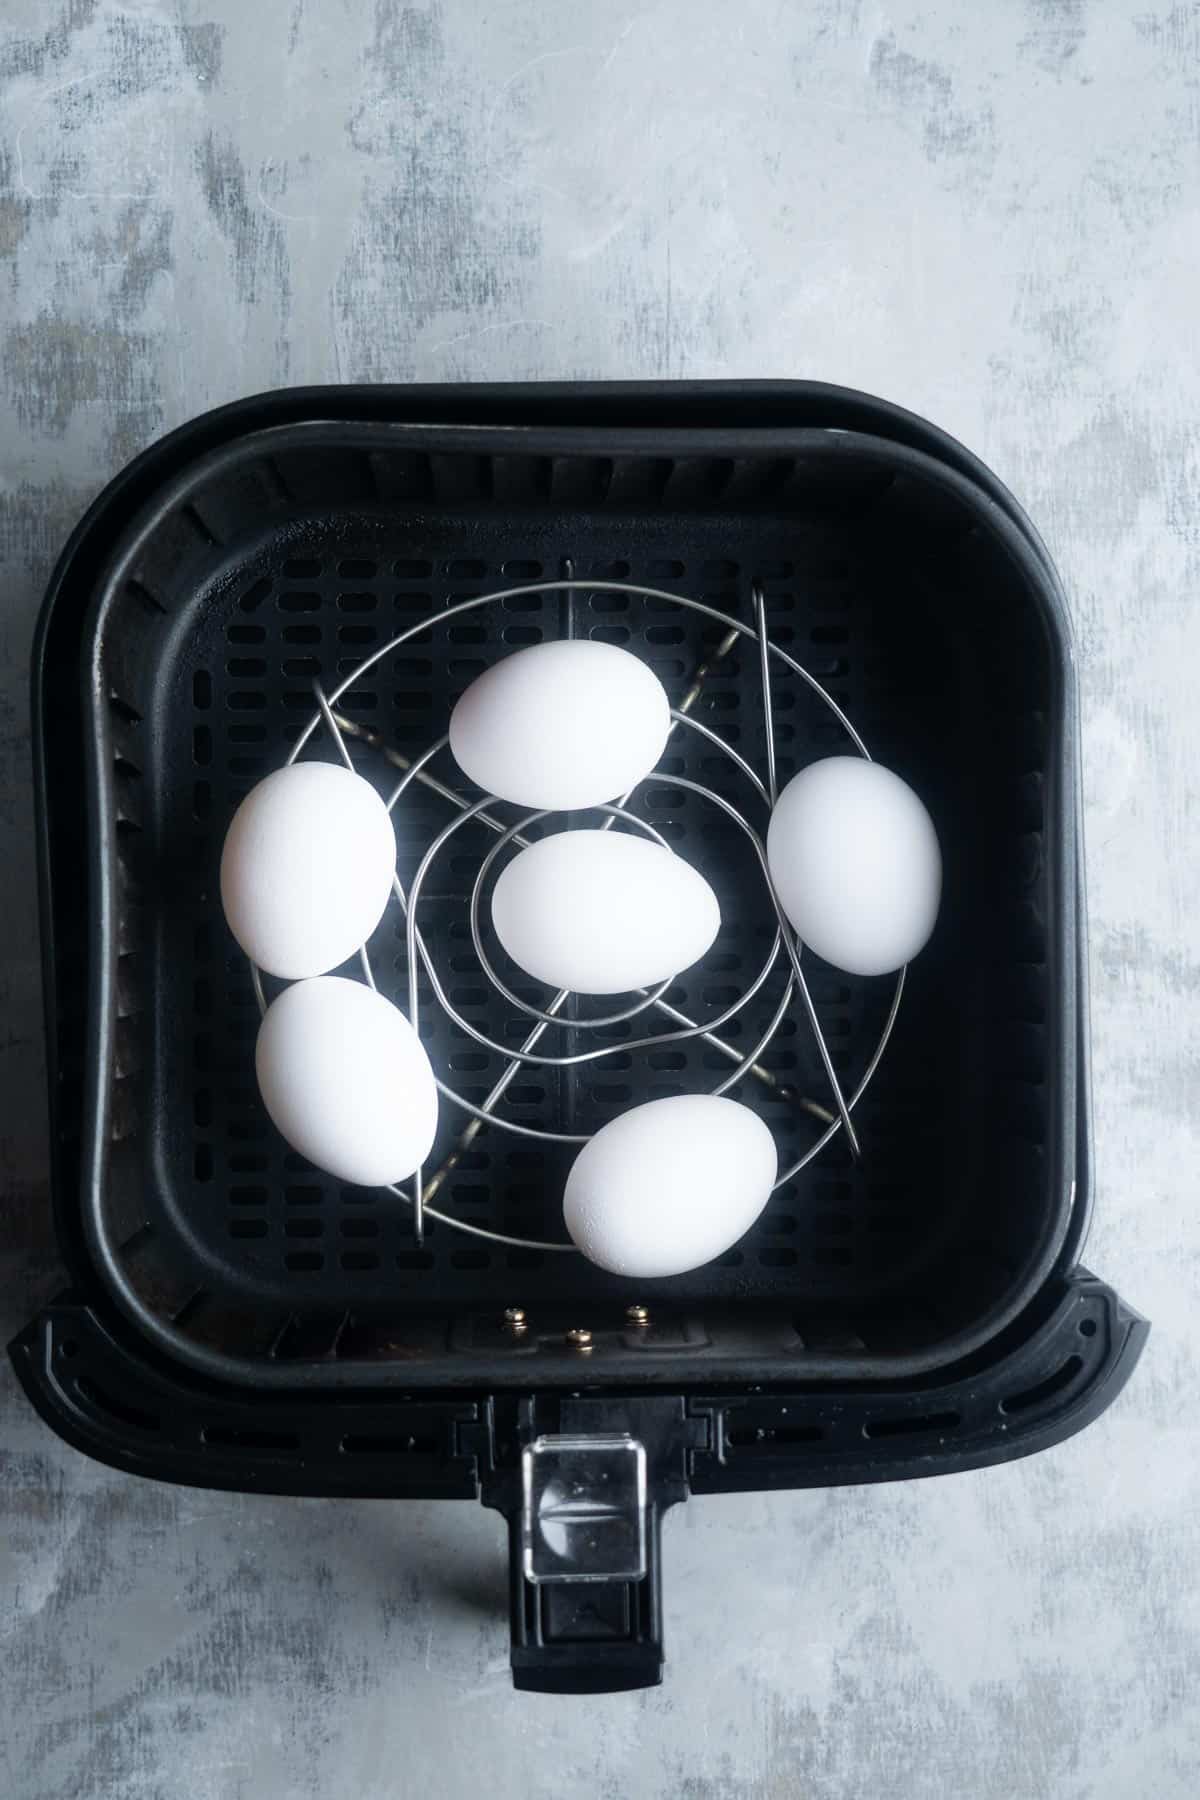 Eggs in air fryer